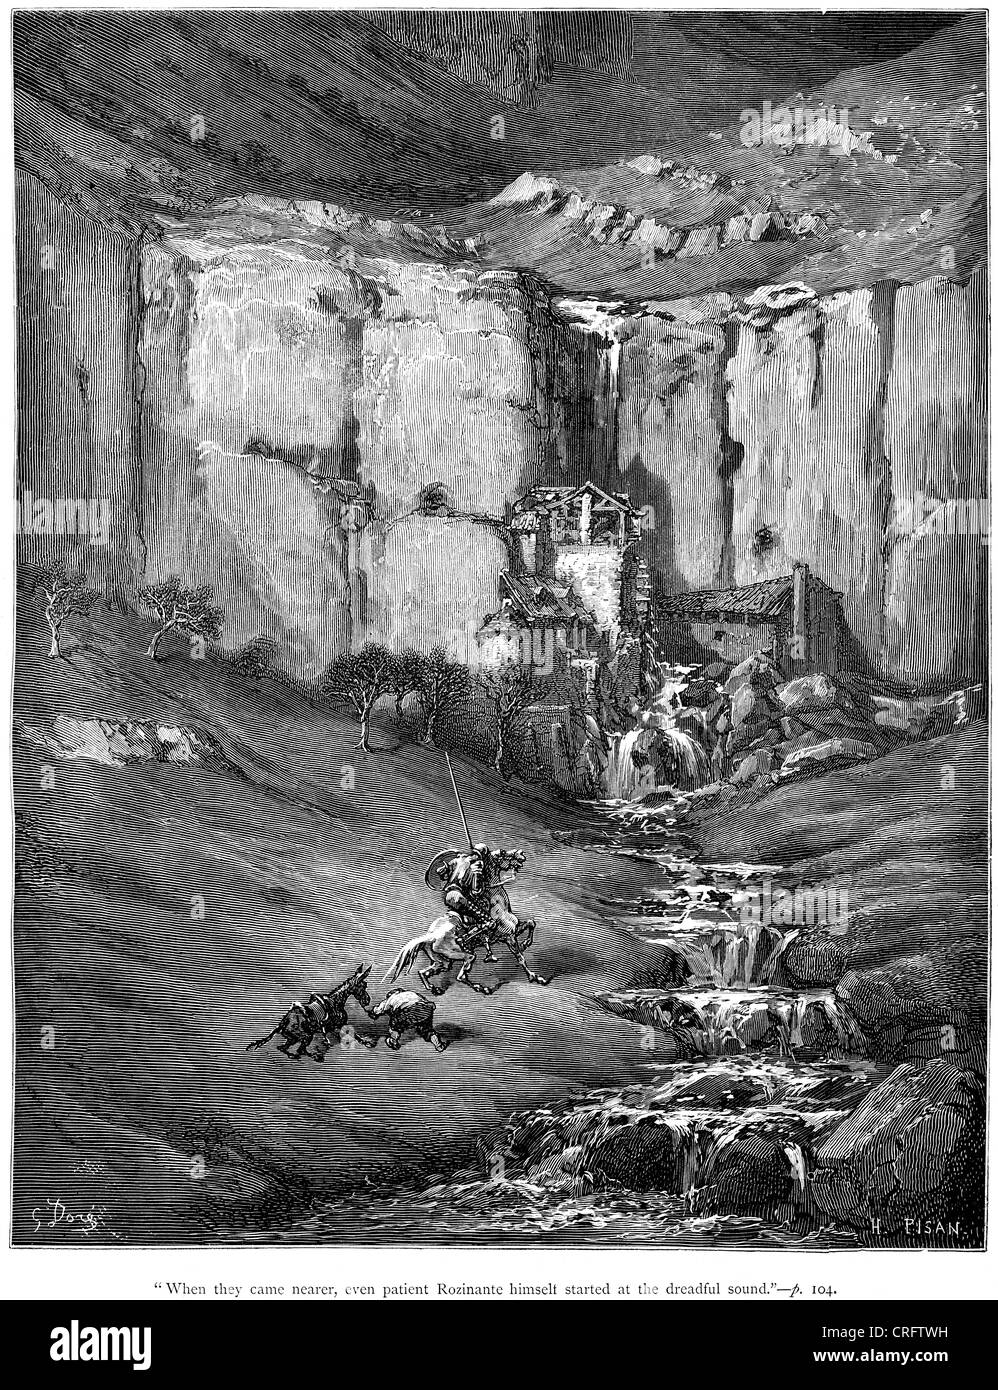 Don Quixote Rozinante begann bei dem schrecklichen Klang. Illustration von Gustave Dore von Don Quijote. Stockfoto